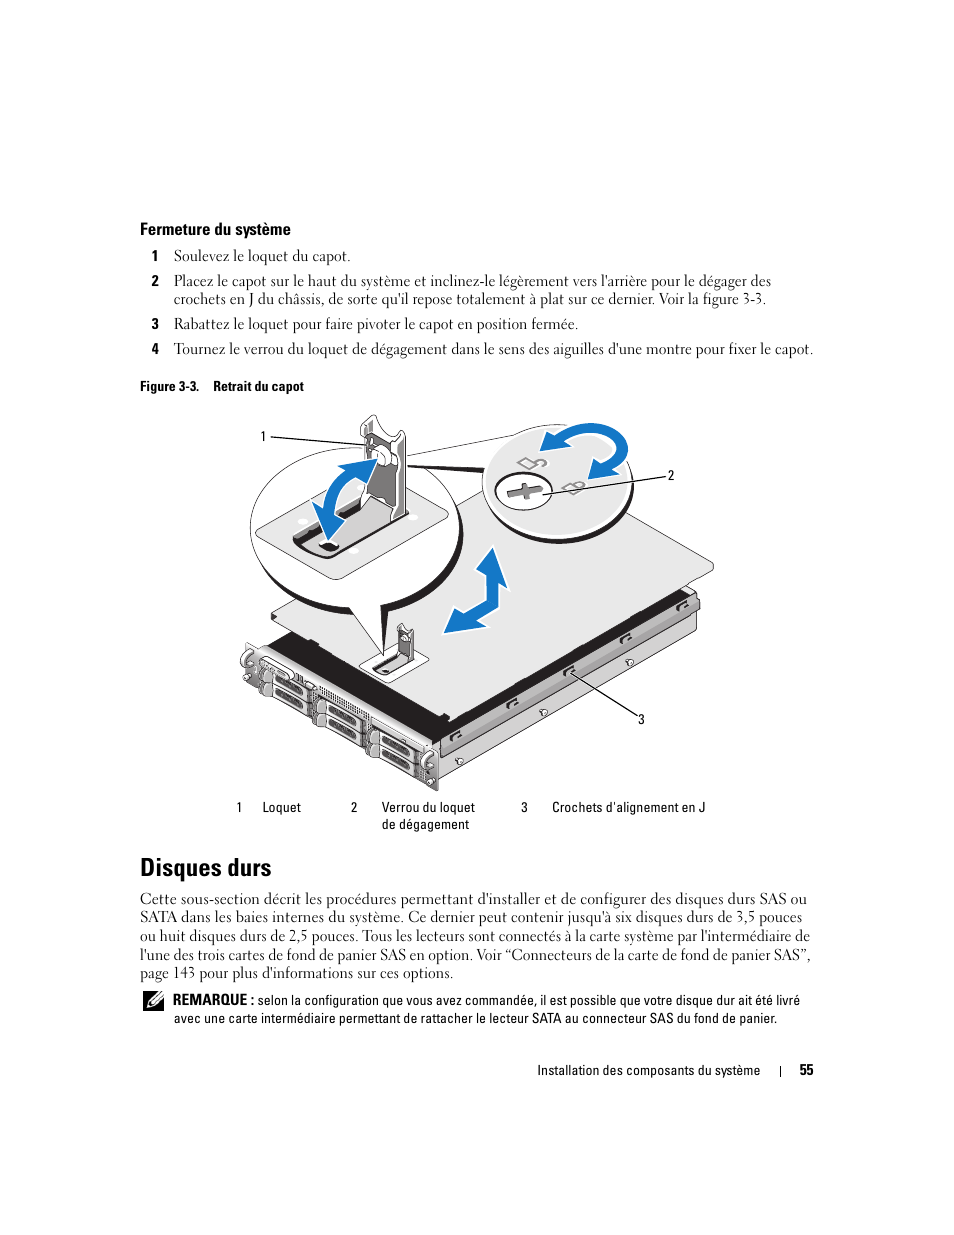 Fermeture du système, Disques durs | Dell POWEREDGE 2950 Manuel d'utilisation | Page 55 / 188